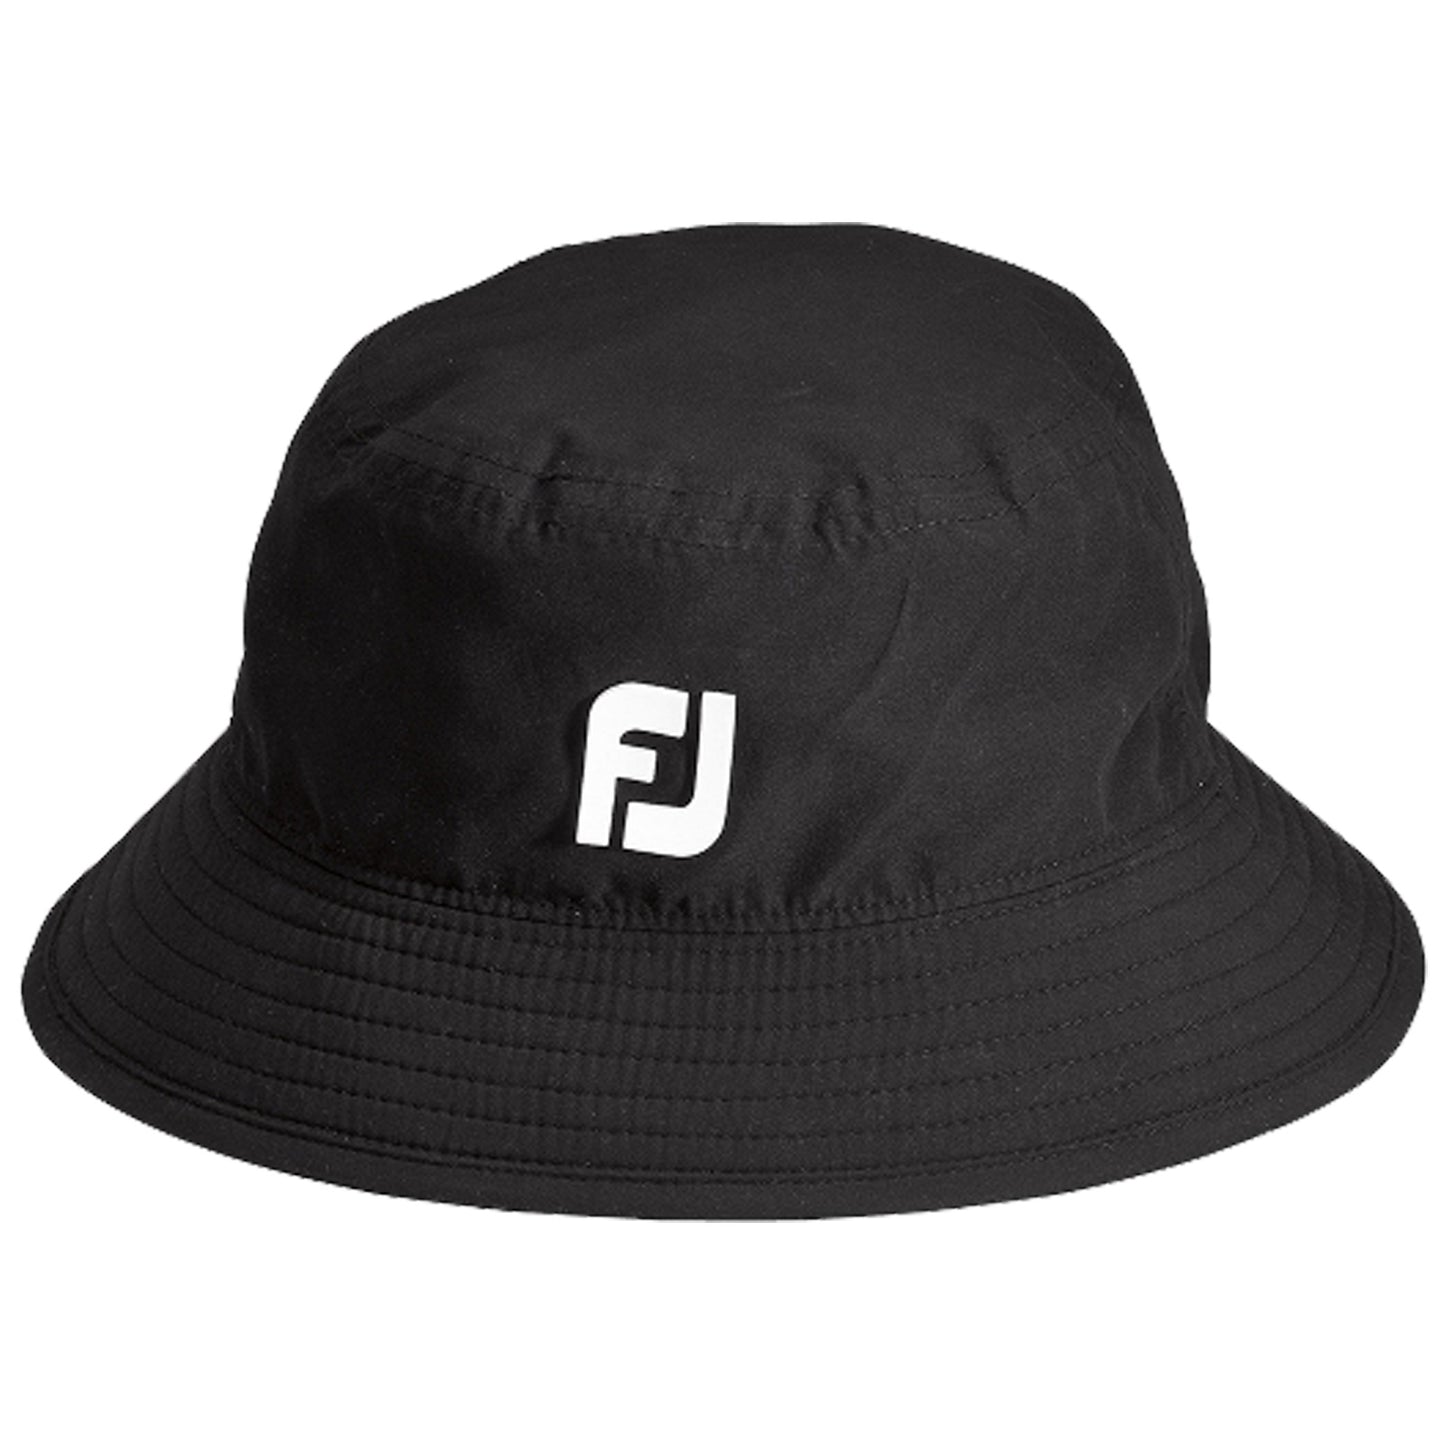 FootJoy DryJoys Tour Waterproof Bucket Hat